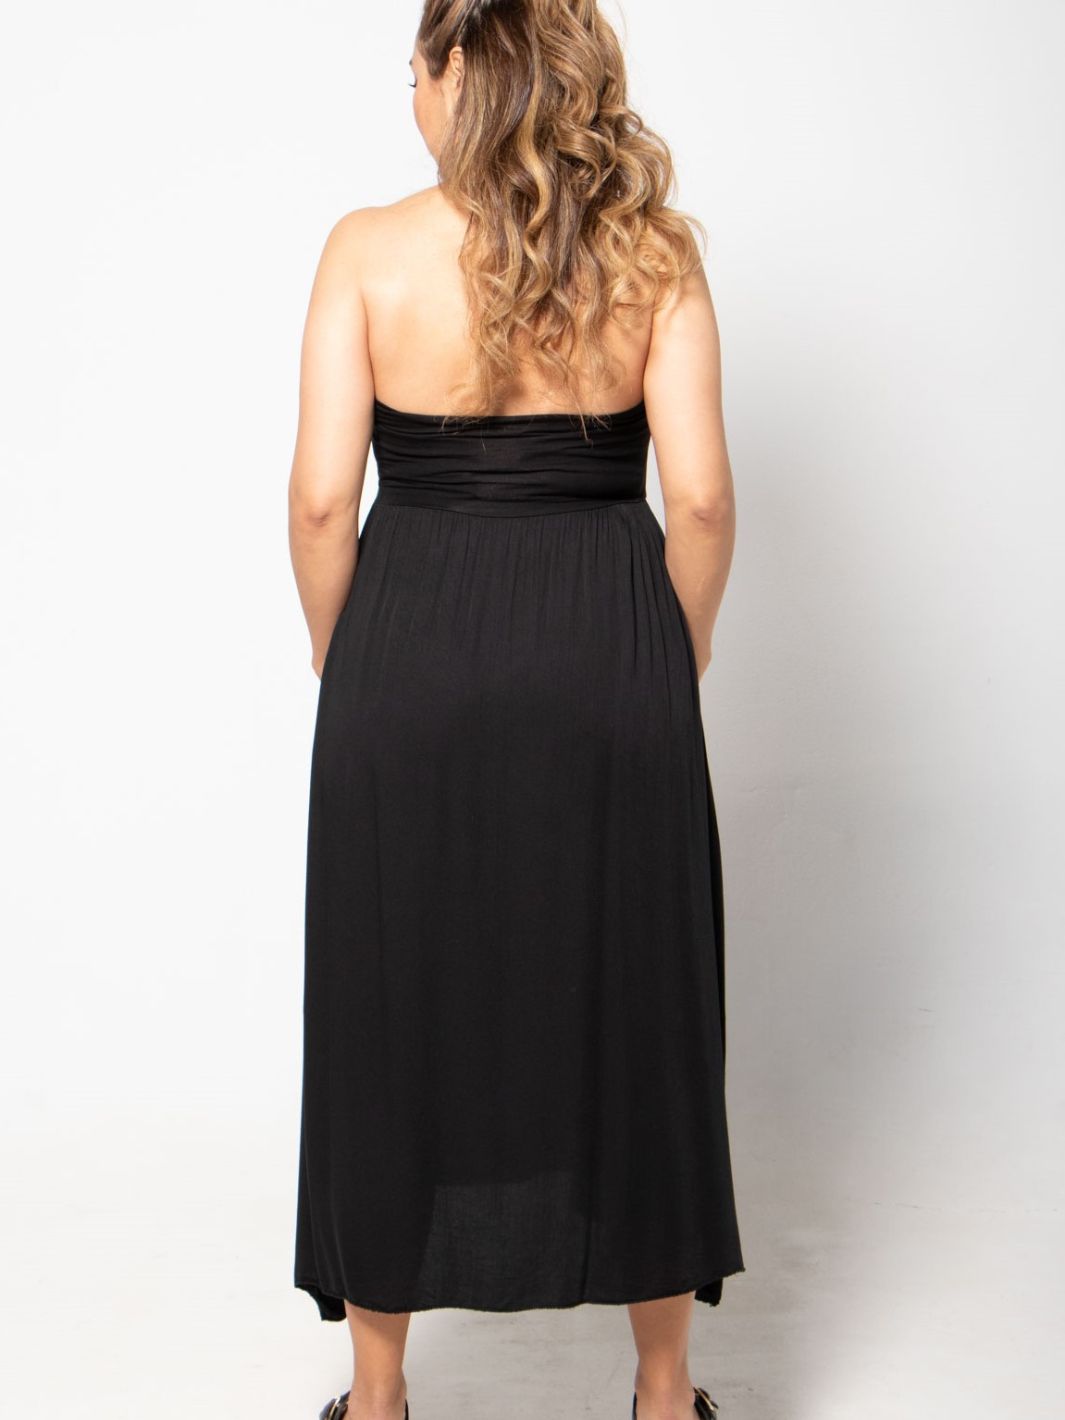 Sleeveless Skirt Dress - Black